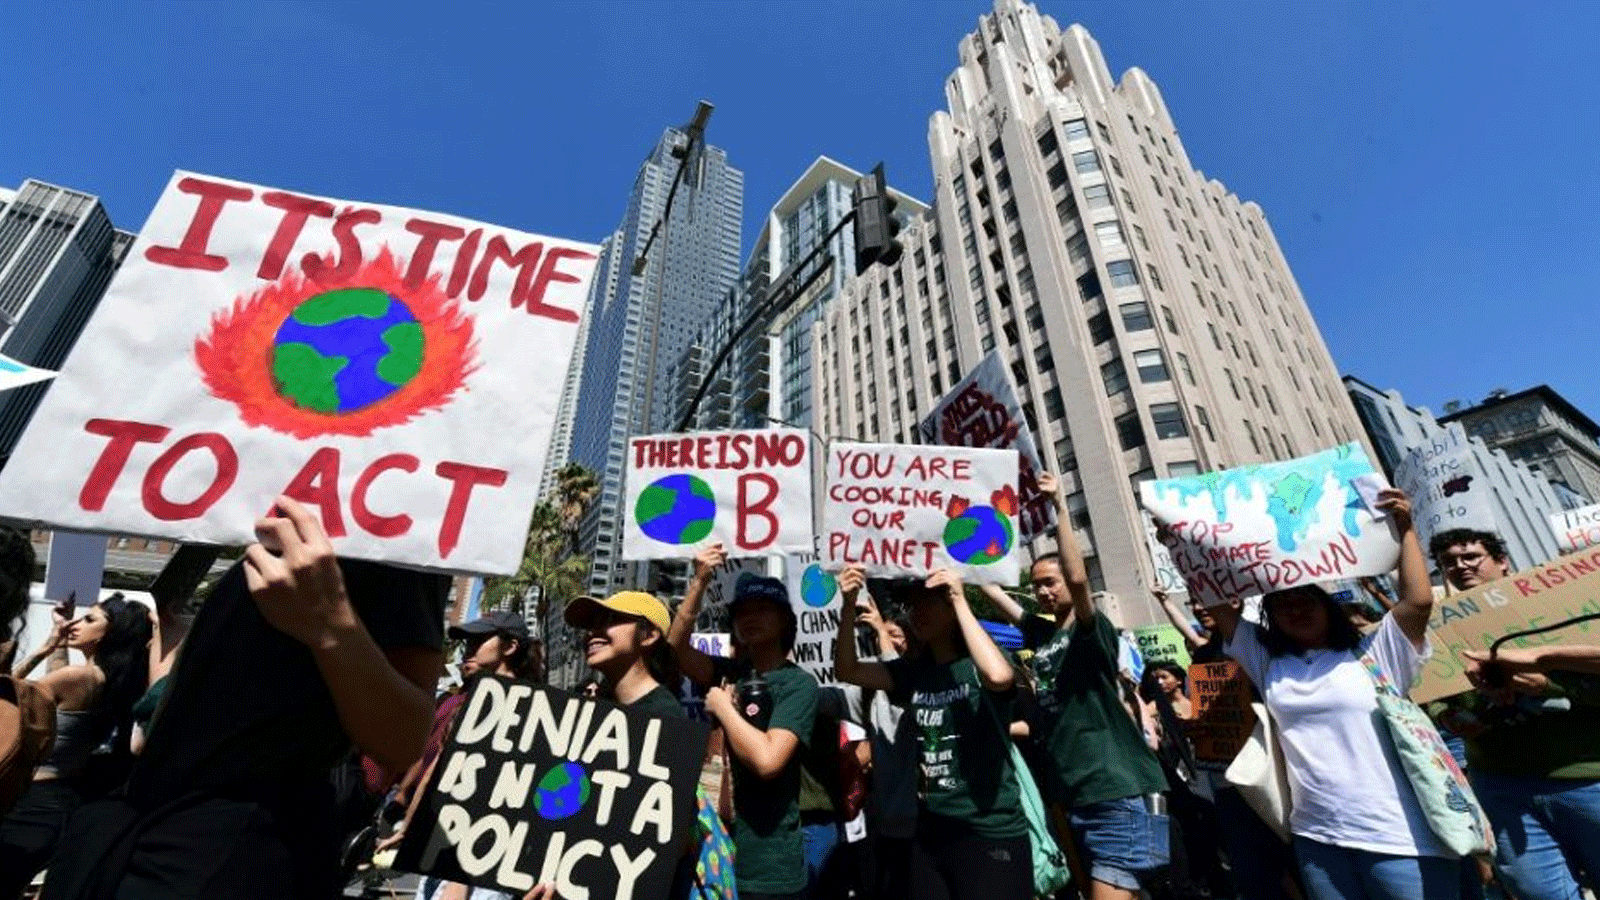 ناشطون يدافعون عن المناخ باحتجاجاتهم يرفعون لافتات تُندد بسياسة الدول البيئية